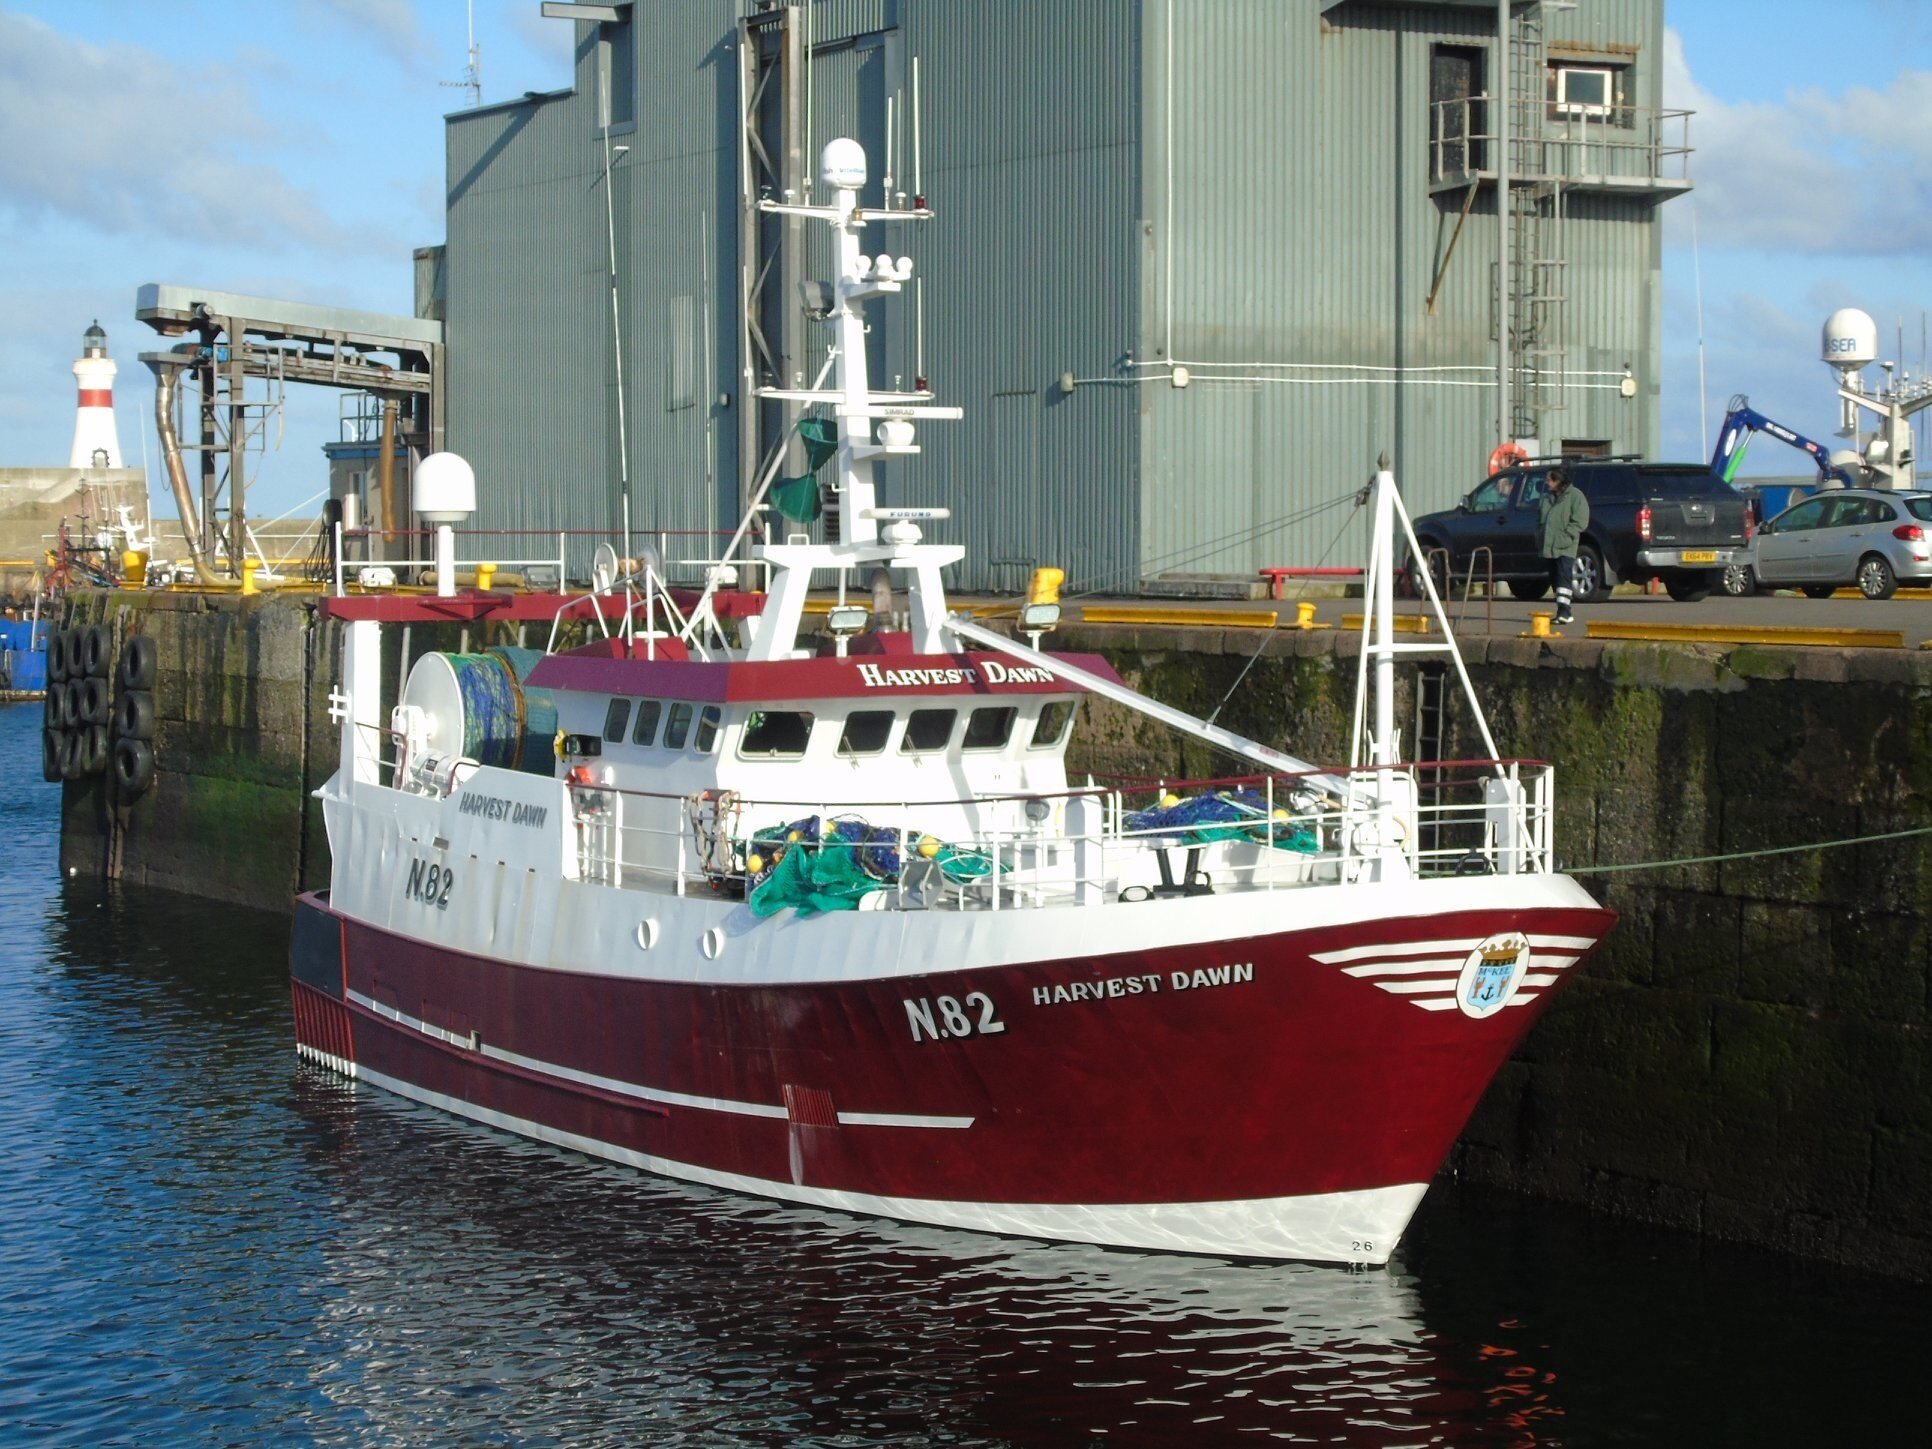 HARVEST DAWN N82Tipo: Metal Hull TrawlerSize: 20.6mBuilt: 1992; Le Guilvinec